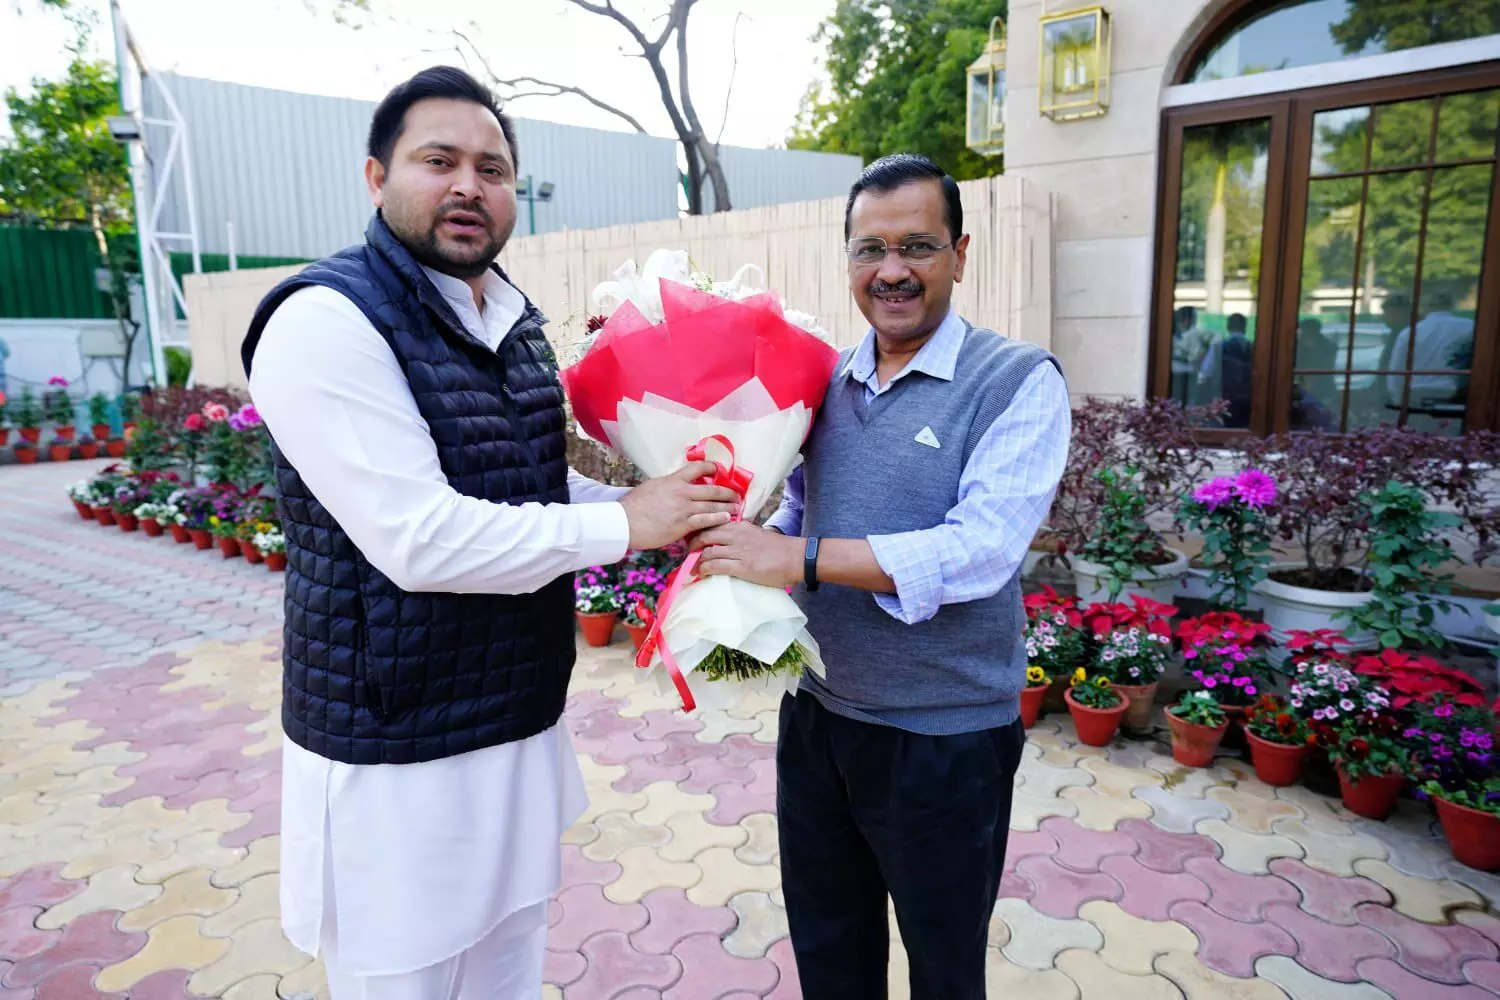 RJD नेता तेजस्वी यादव ने दिल्ली में CM केजरीवाल से की मुलाकात, जनता ने कसा तंज कहा- चोर चोर मौसेरे भाई